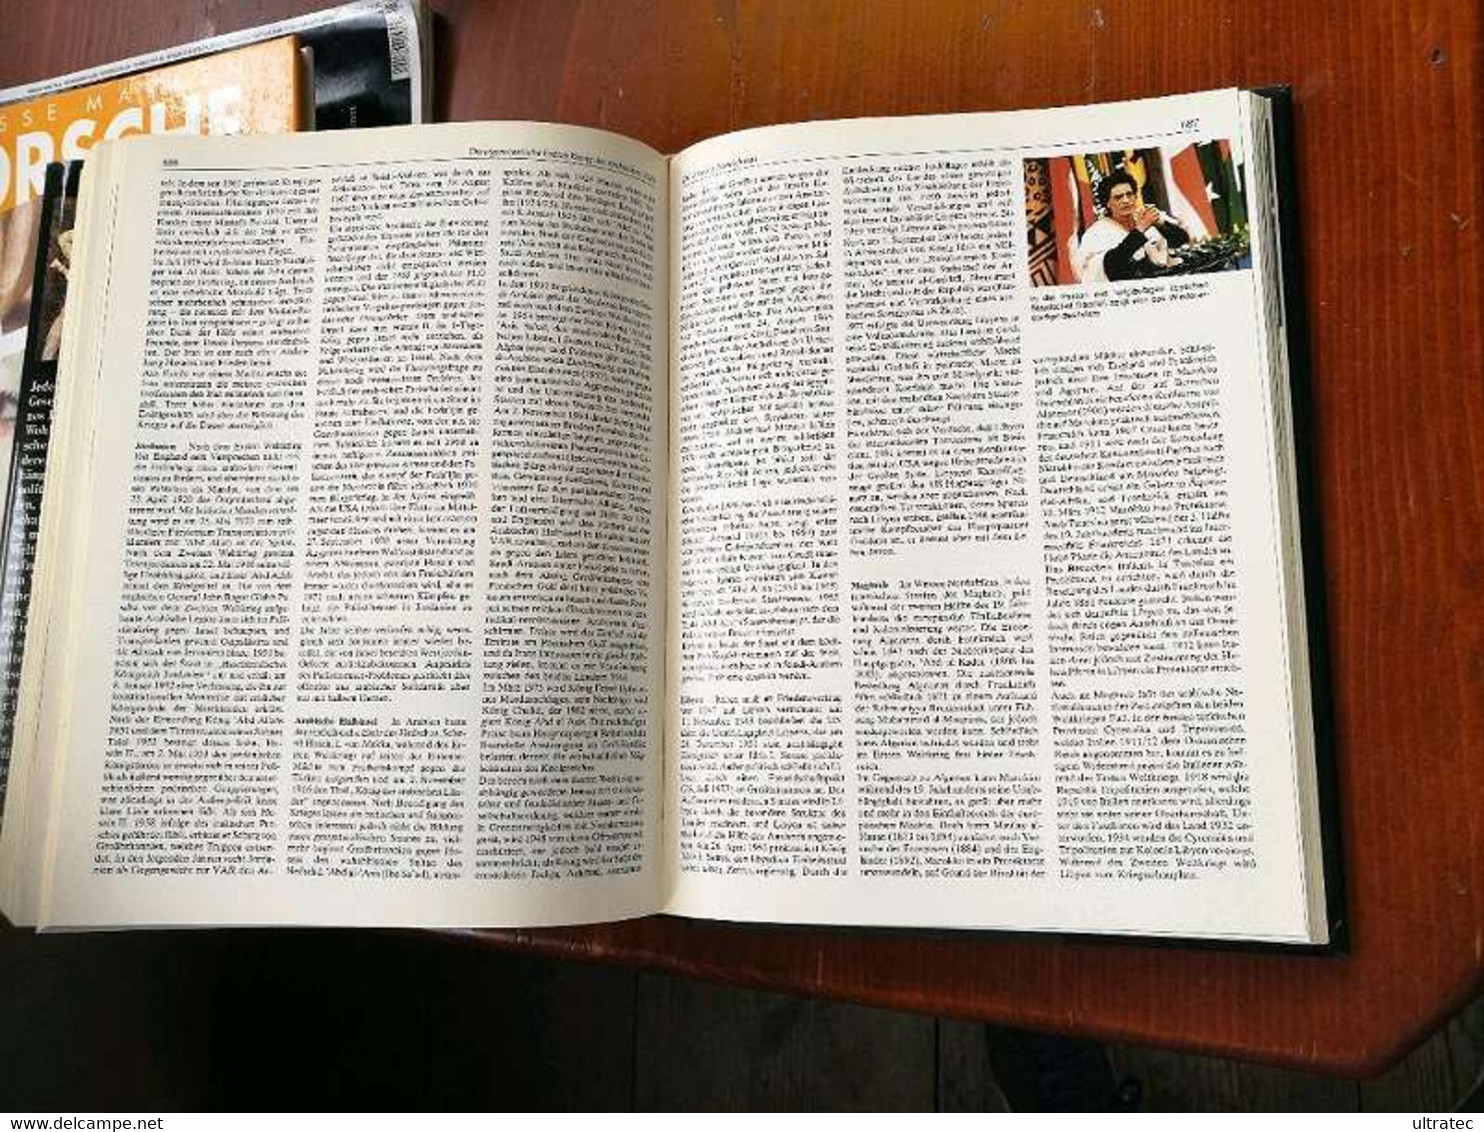 Holle Universal Geschichte Tolles Buch über 800 Seiten Geschichte - Encyclopedieën